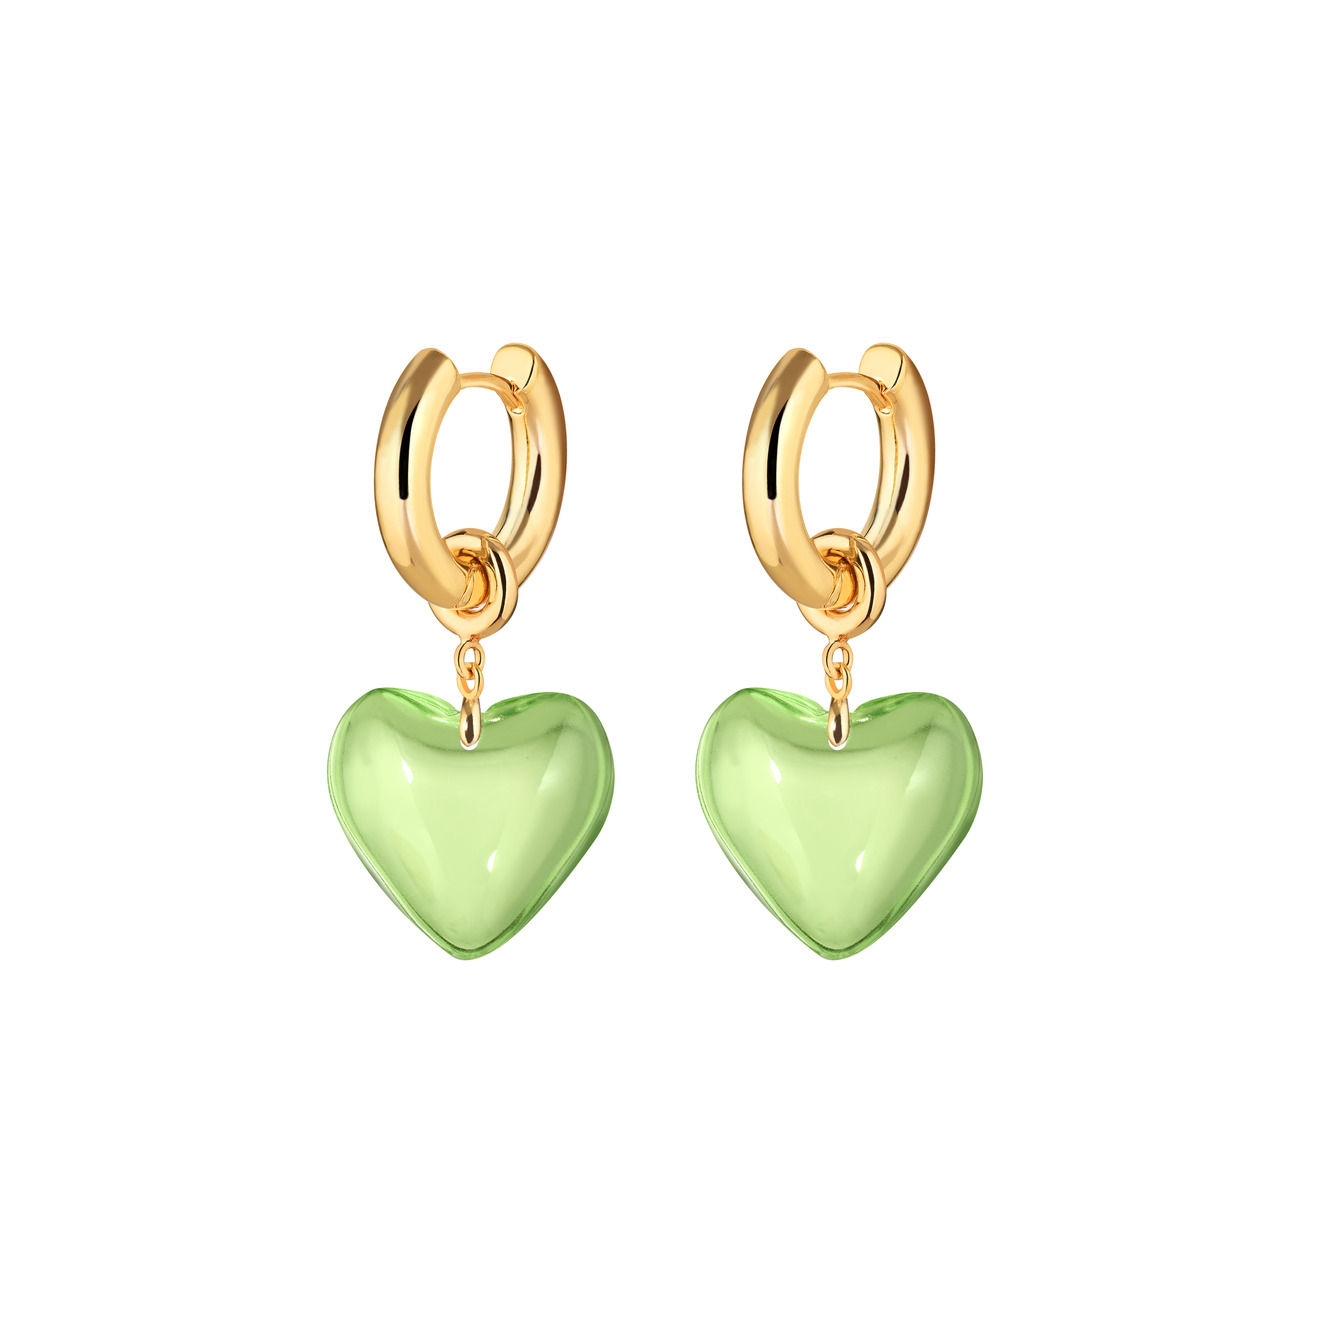 Kotlo Studio Золотистые серьги Sweetheart с зелеными сердцами aqua золотистые серьги с розовыми подвесками сердцами